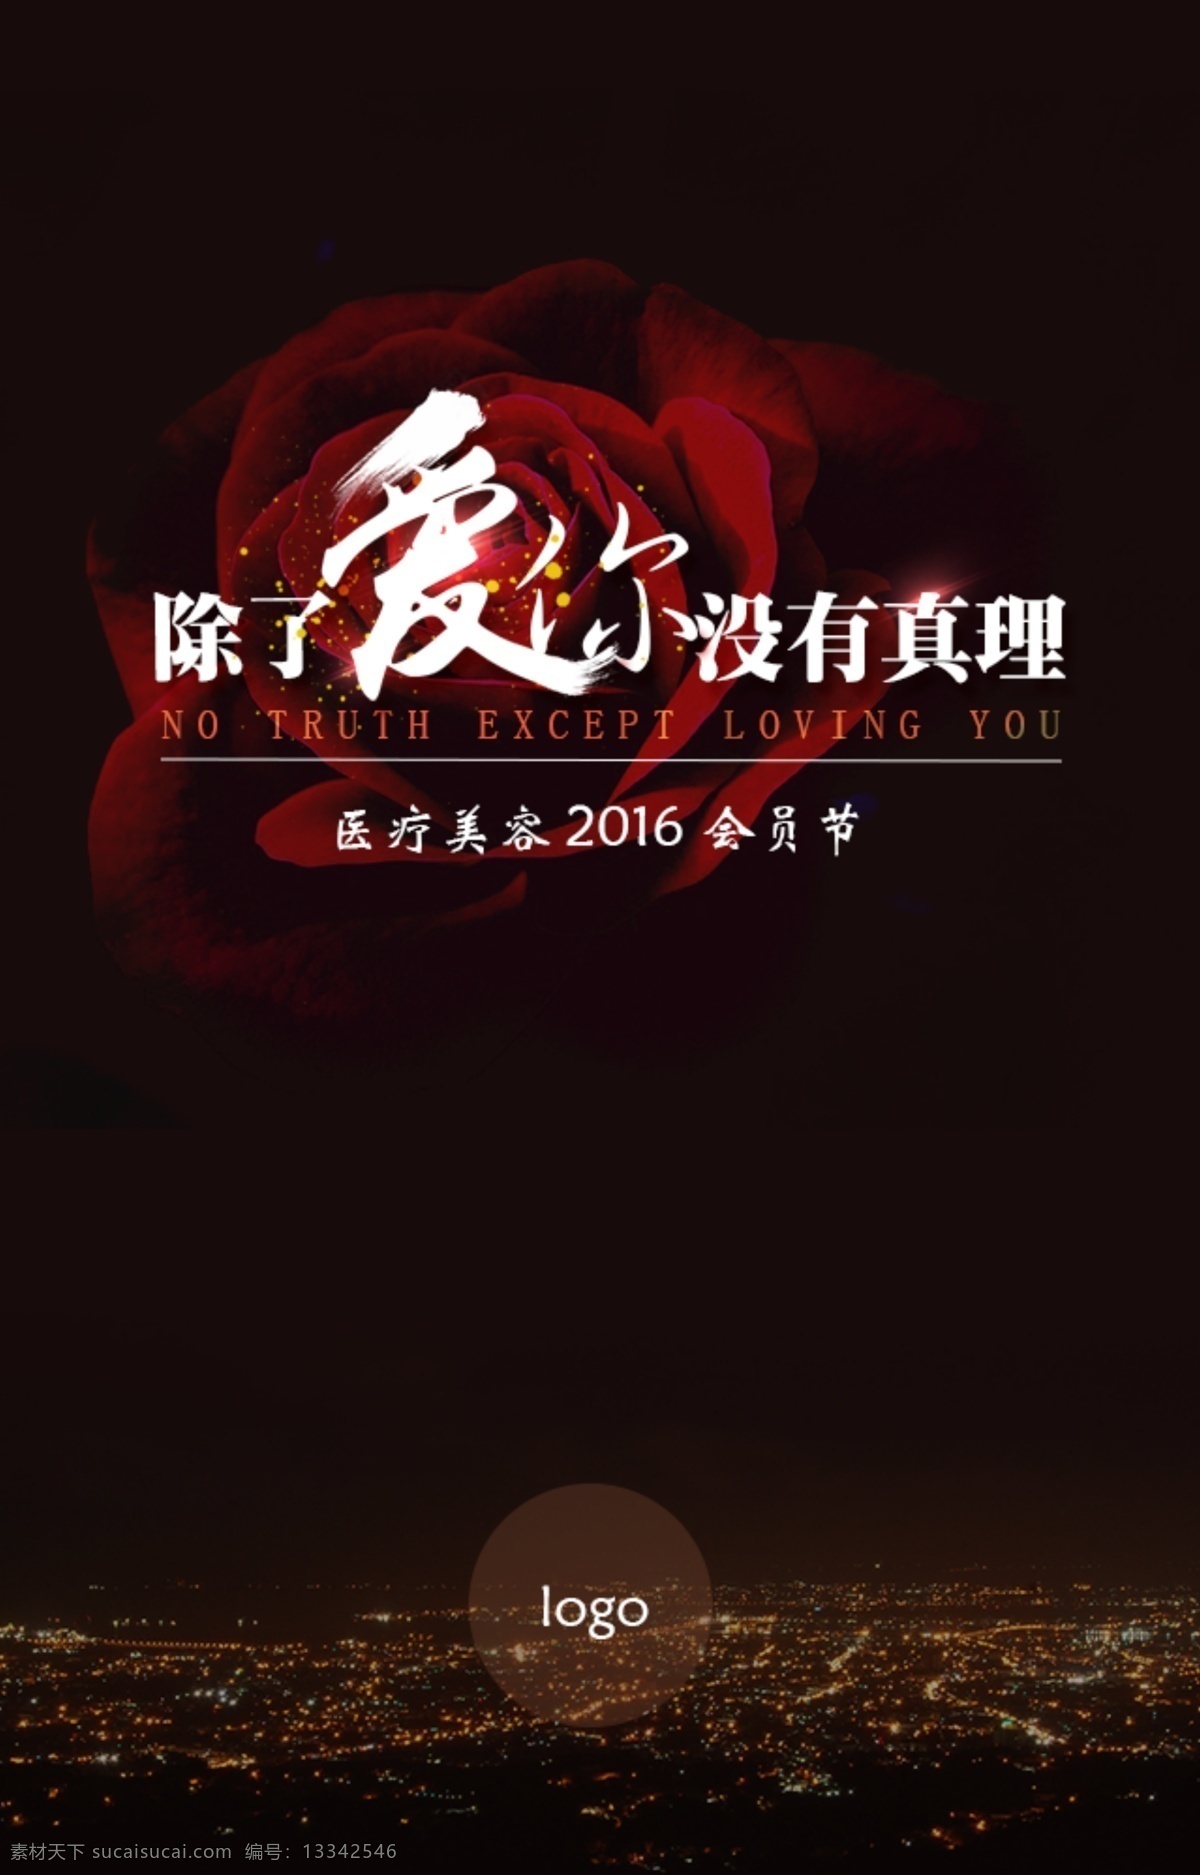 爱你 活动 宣传 h5 手机 页面 黑色 专题 玫瑰花 大气 移动界面设计 手机界面